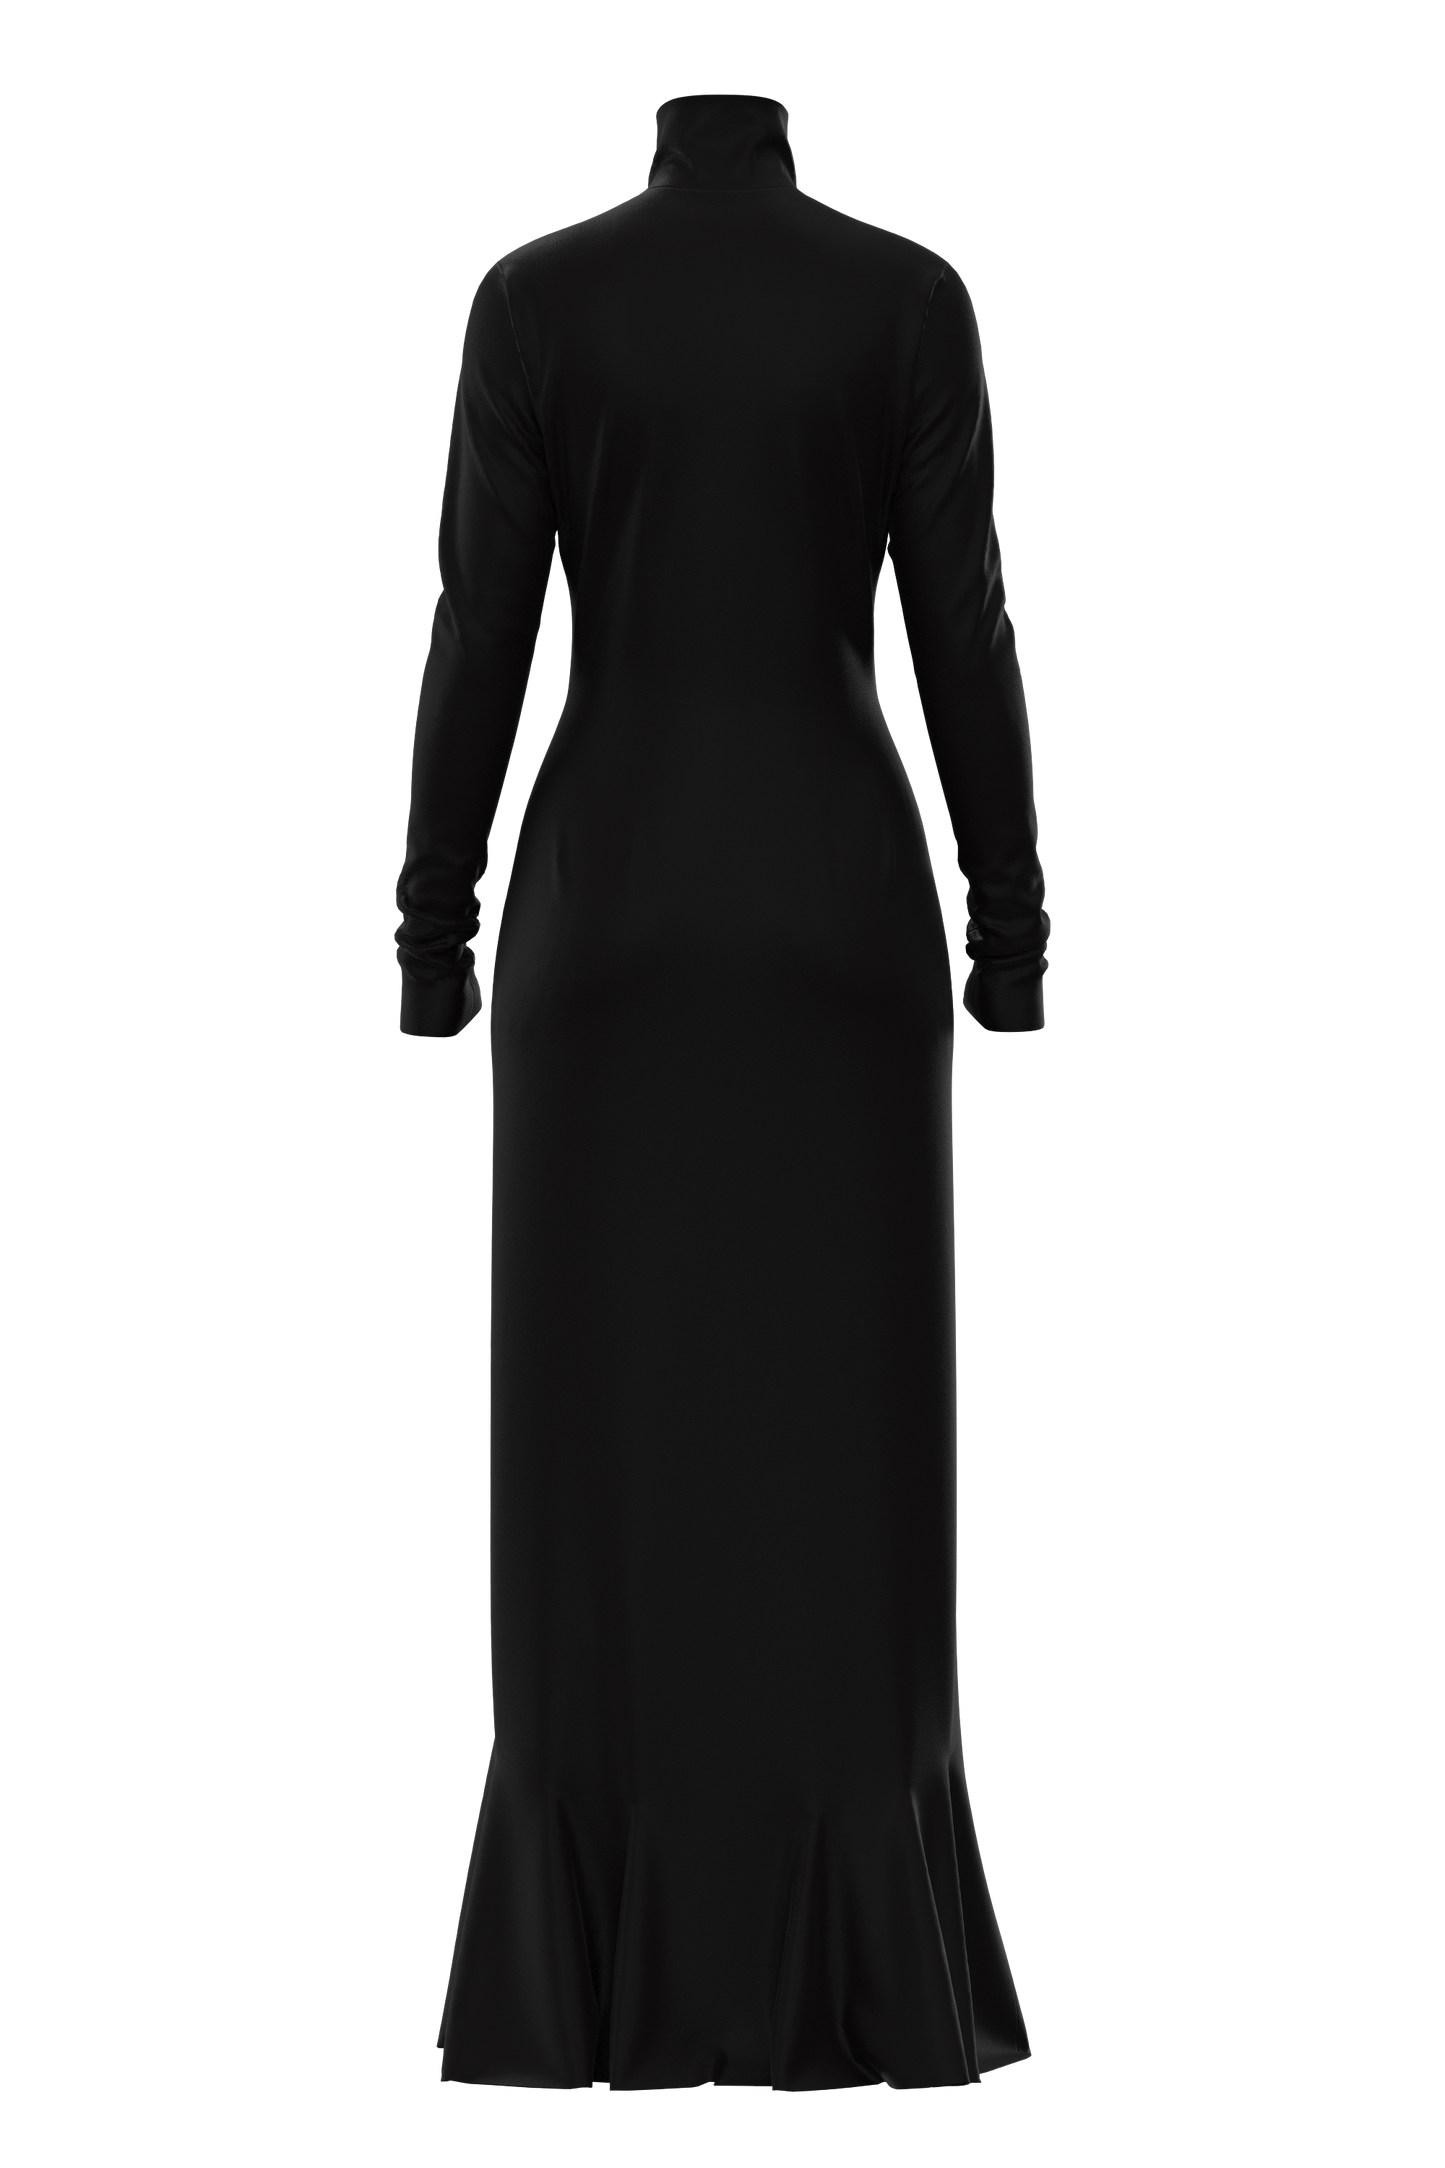  | Full Length Satin Dress Black